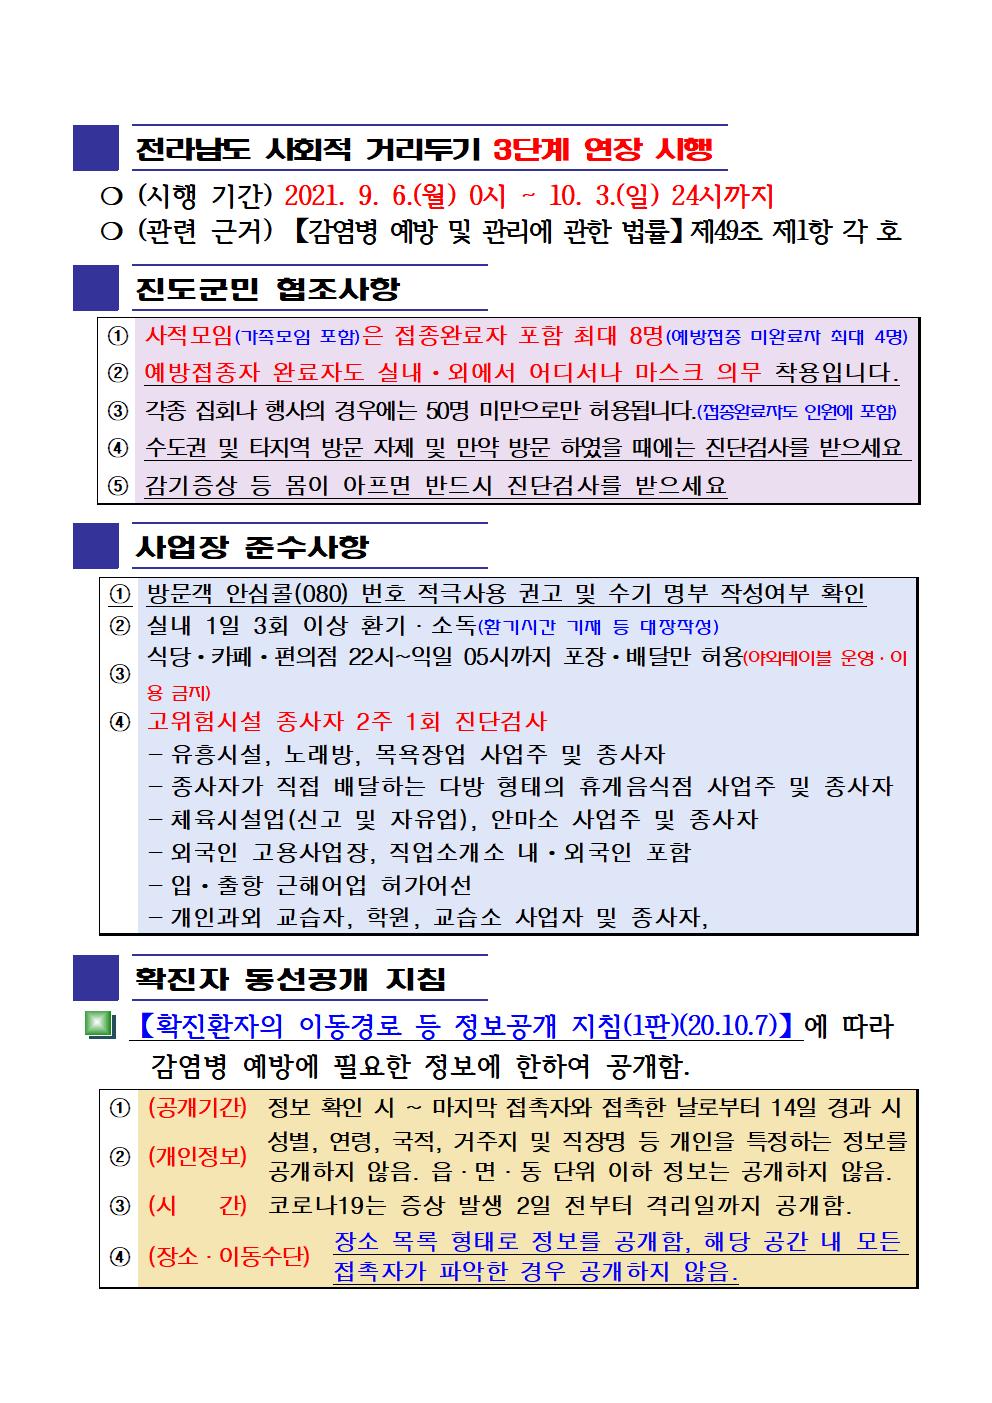 2021년 코로나19 대응 일일상황보고(9월 17일 24시 기준) 첨부#2